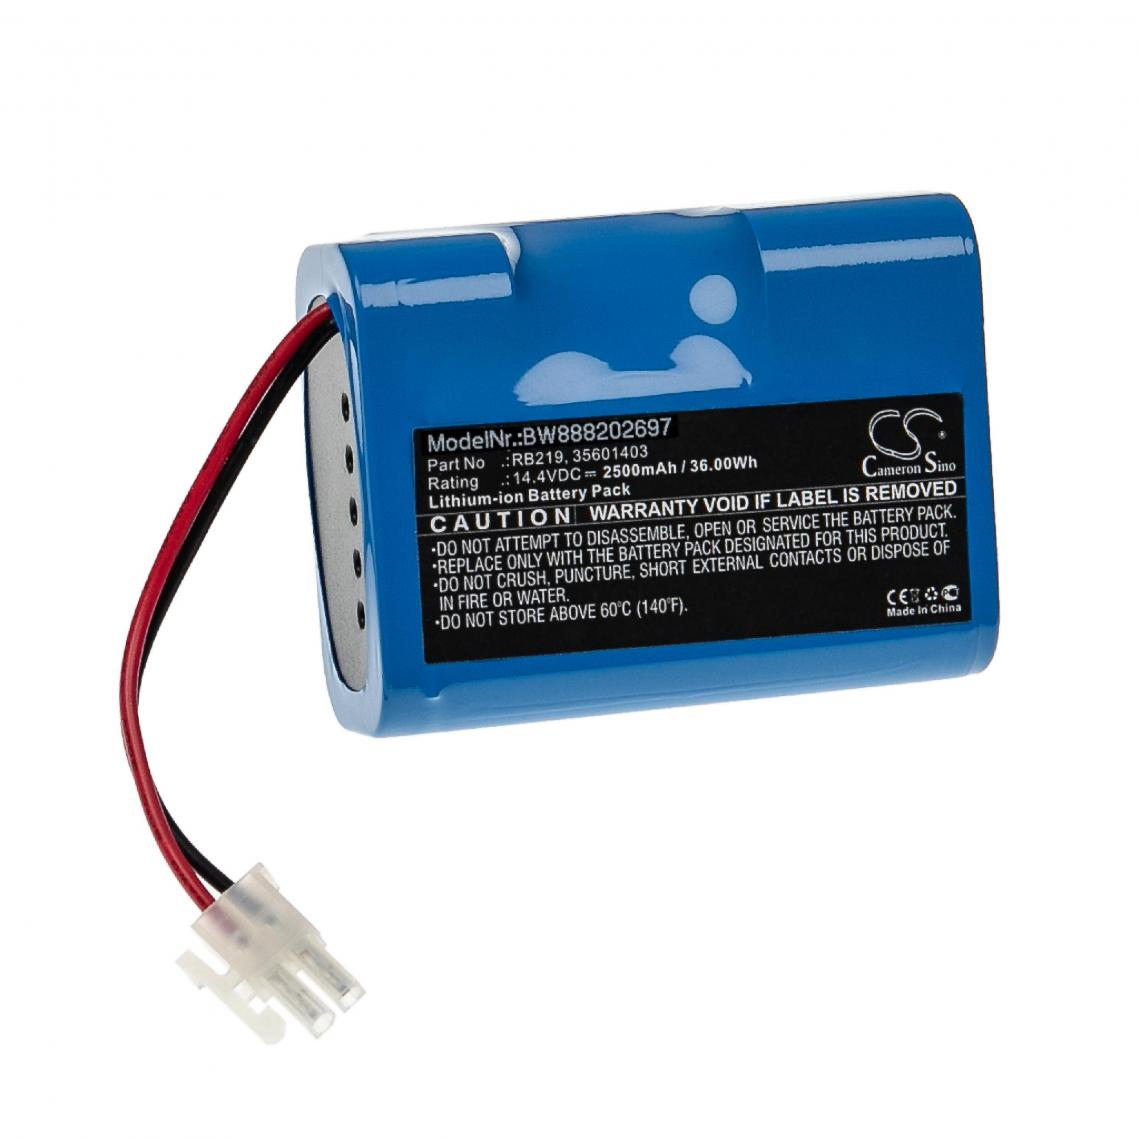 Vhbw - vhbw Batterie compatible avec Hoover RBC050011, RBC070, RBC070/1011, RBC070011, RBC090 aspirateur, robot électroménager (2500mAh, 14,4V, Li-ion) - Accessoire entretien des sols